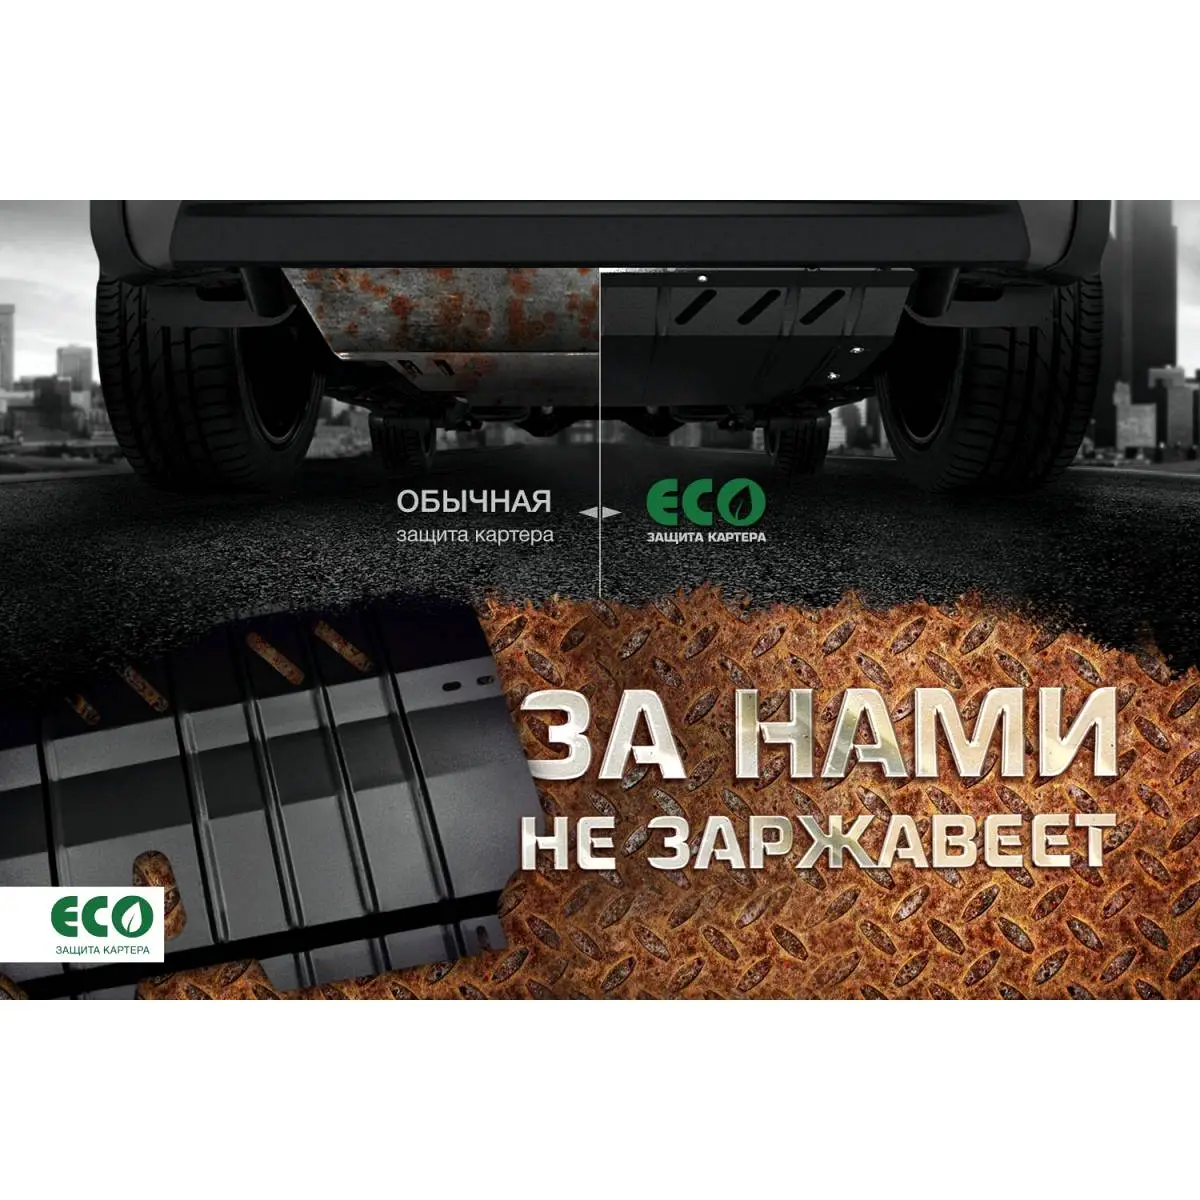 Комплект защиты картера и крепеж Eco MKH10 1437099115 5F1 YI eco4513020 изображение 9